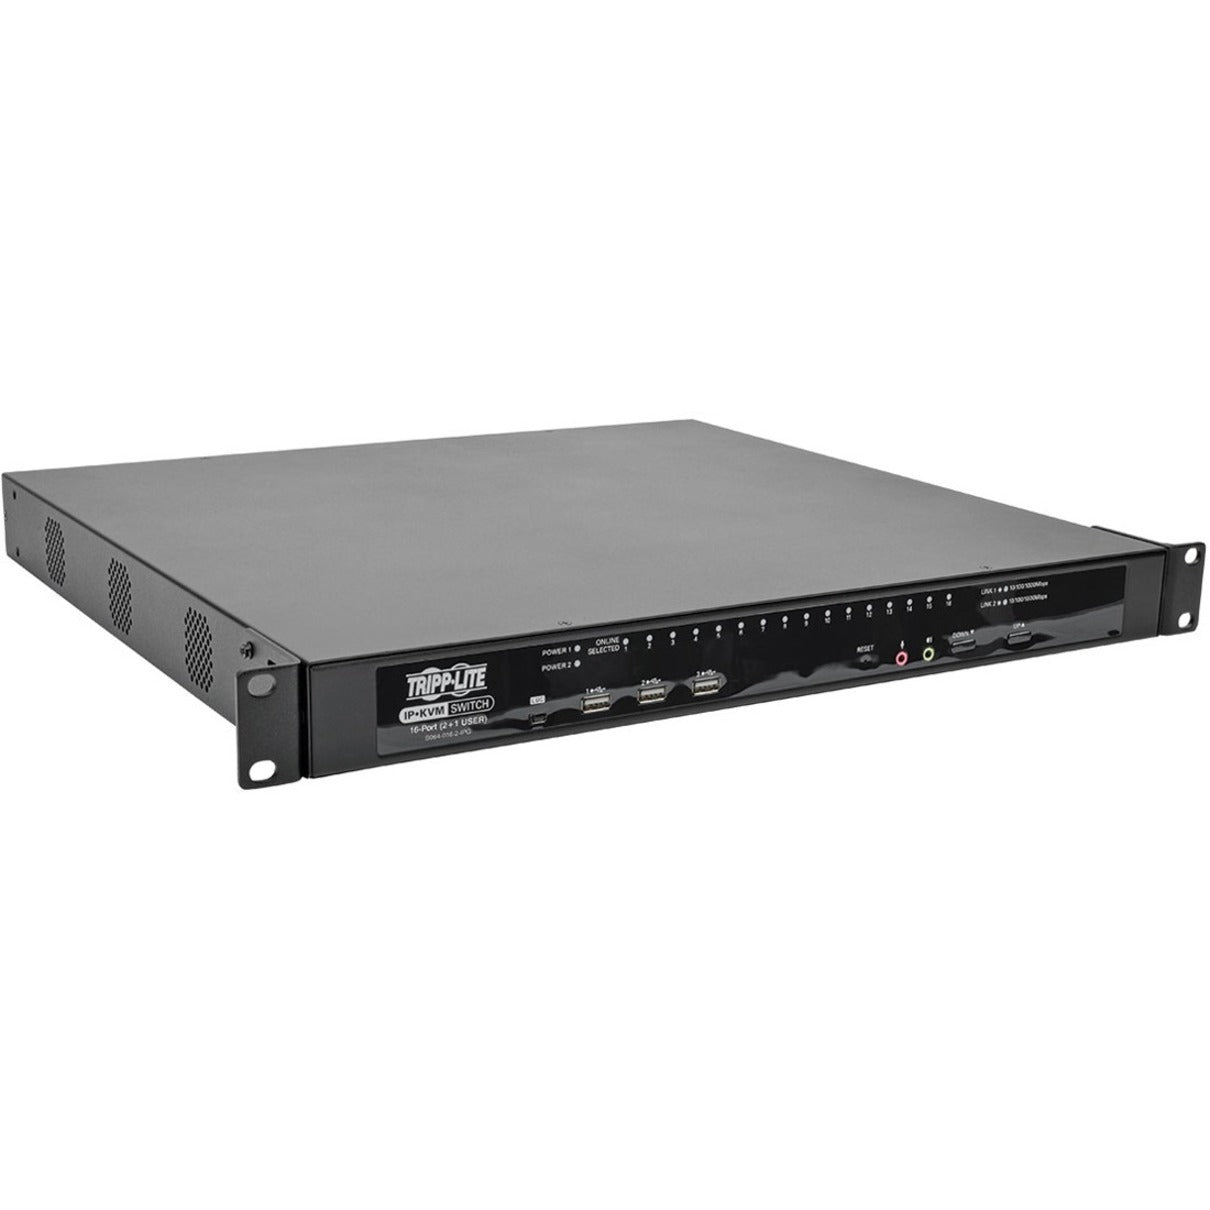 تريب لايت B064-016-02-IPG NetDirector محول تبديل KVM، 16 منفذ، USB/PS/2، قابل للتركيب على الرف